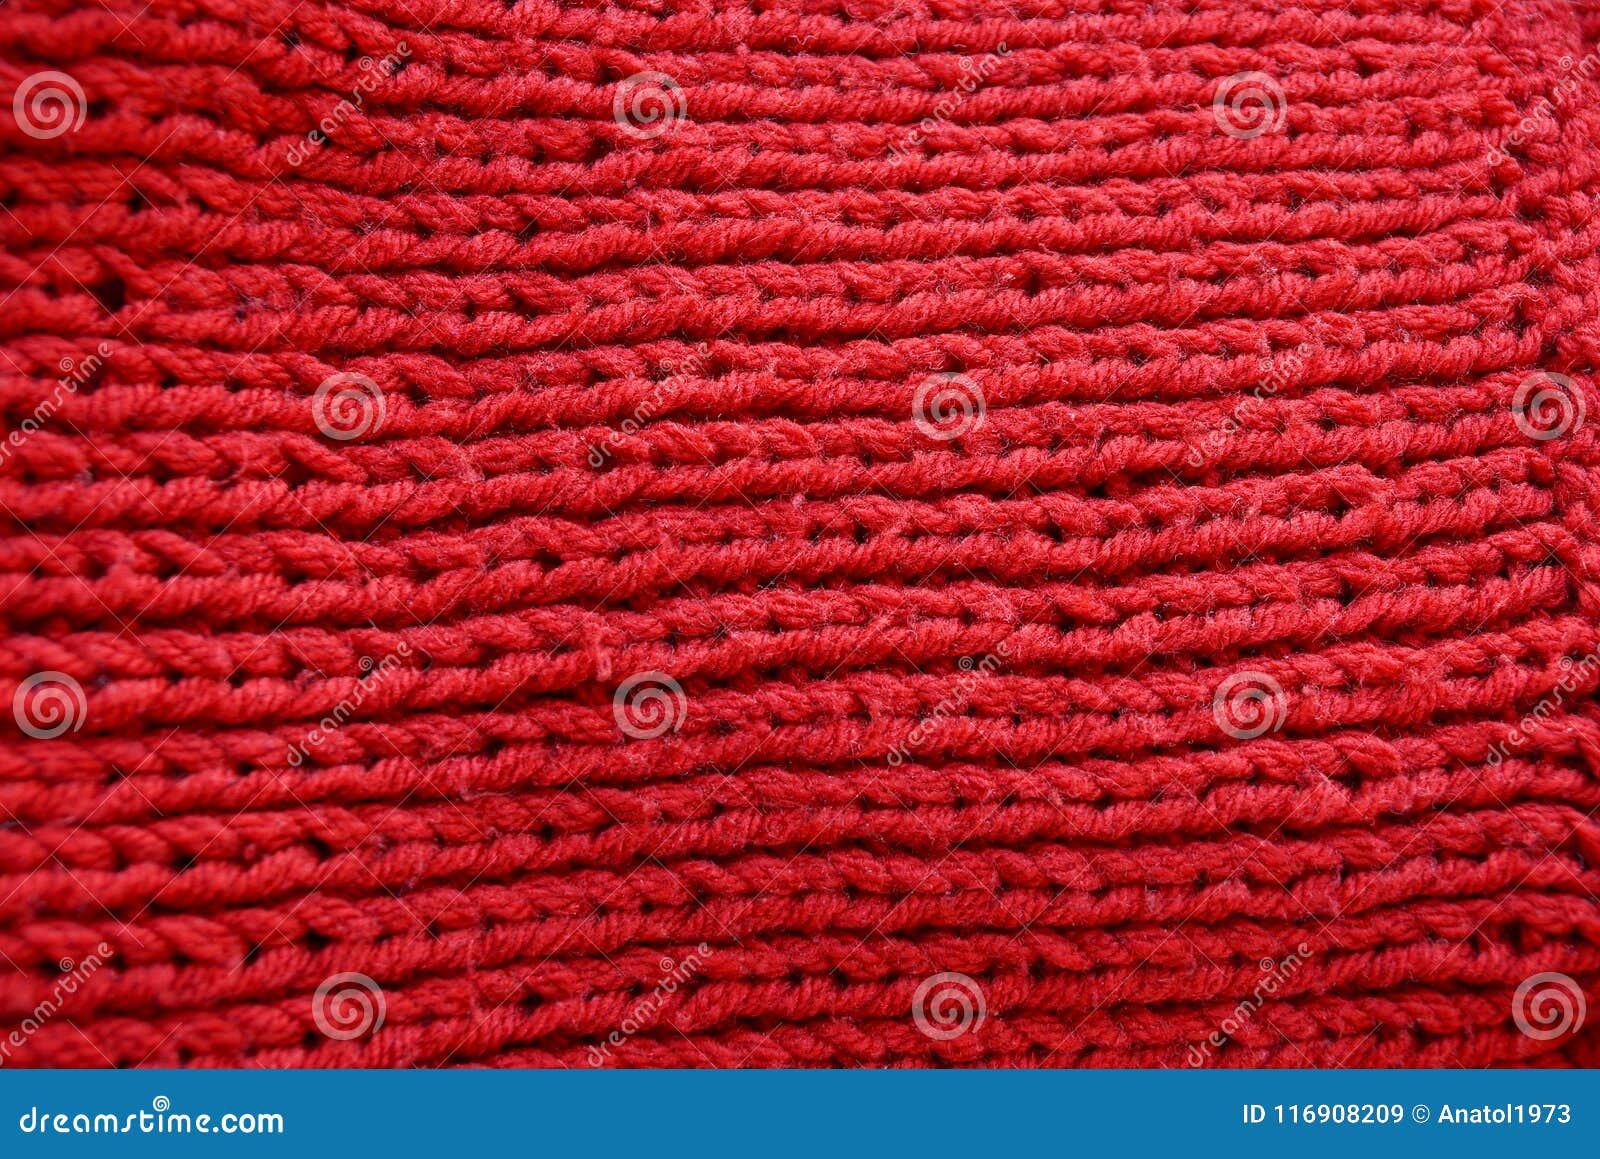 Textura Roja De La Tela De Lana De Un Pedazo De Ropa Imagen de archivo -  Imagen de tela, ropa: 116908209